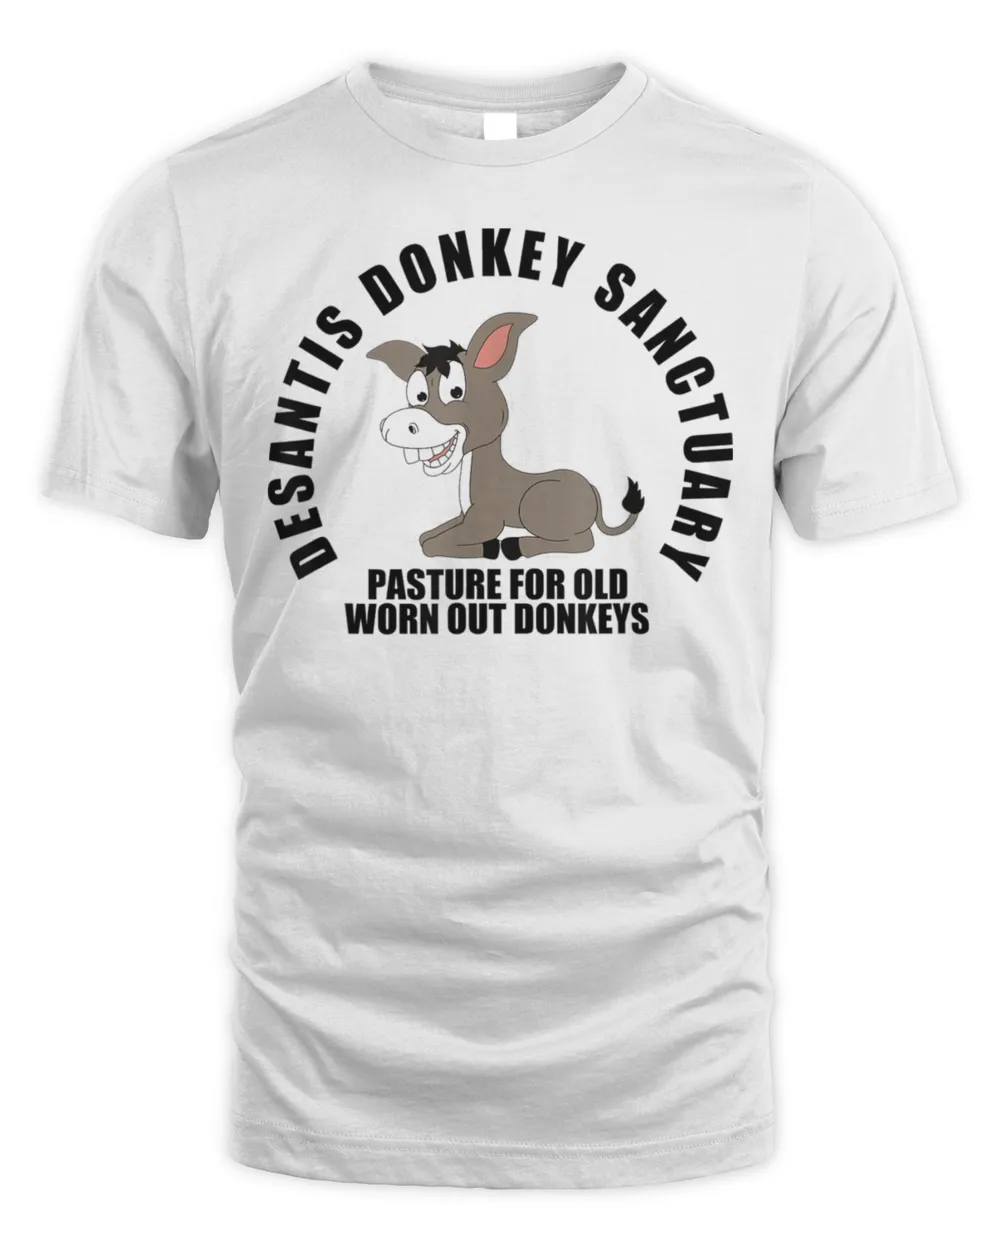 DeSantis Donkey Sanctuary, Political Meme Ron DeSantis T-Shirt Unisex Standard T-Shirt white xl